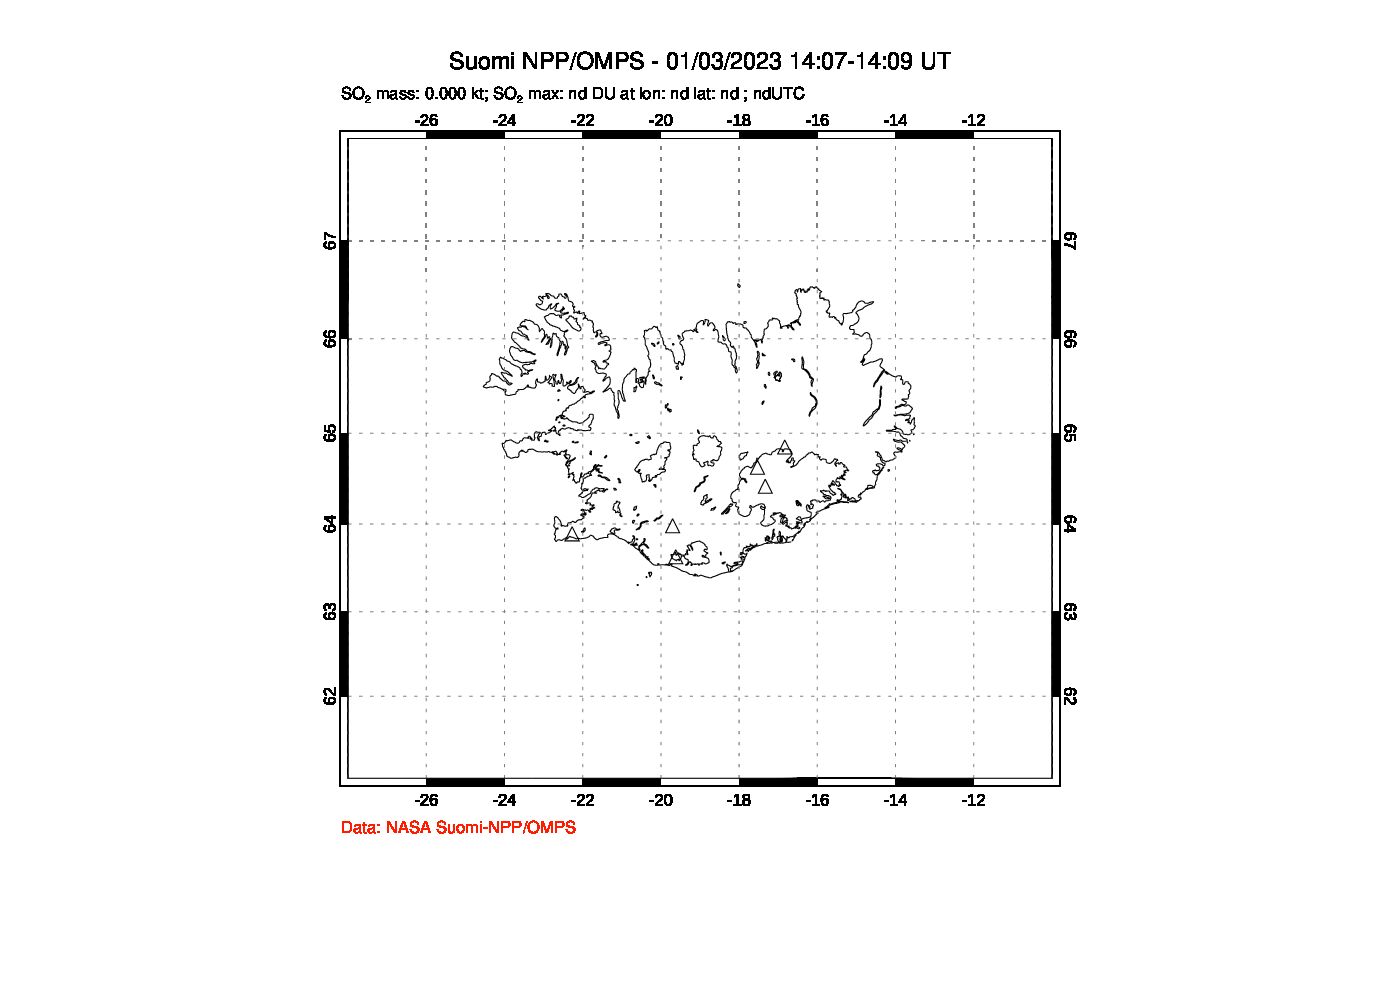 A sulfur dioxide image over Iceland on Jan 03, 2023.